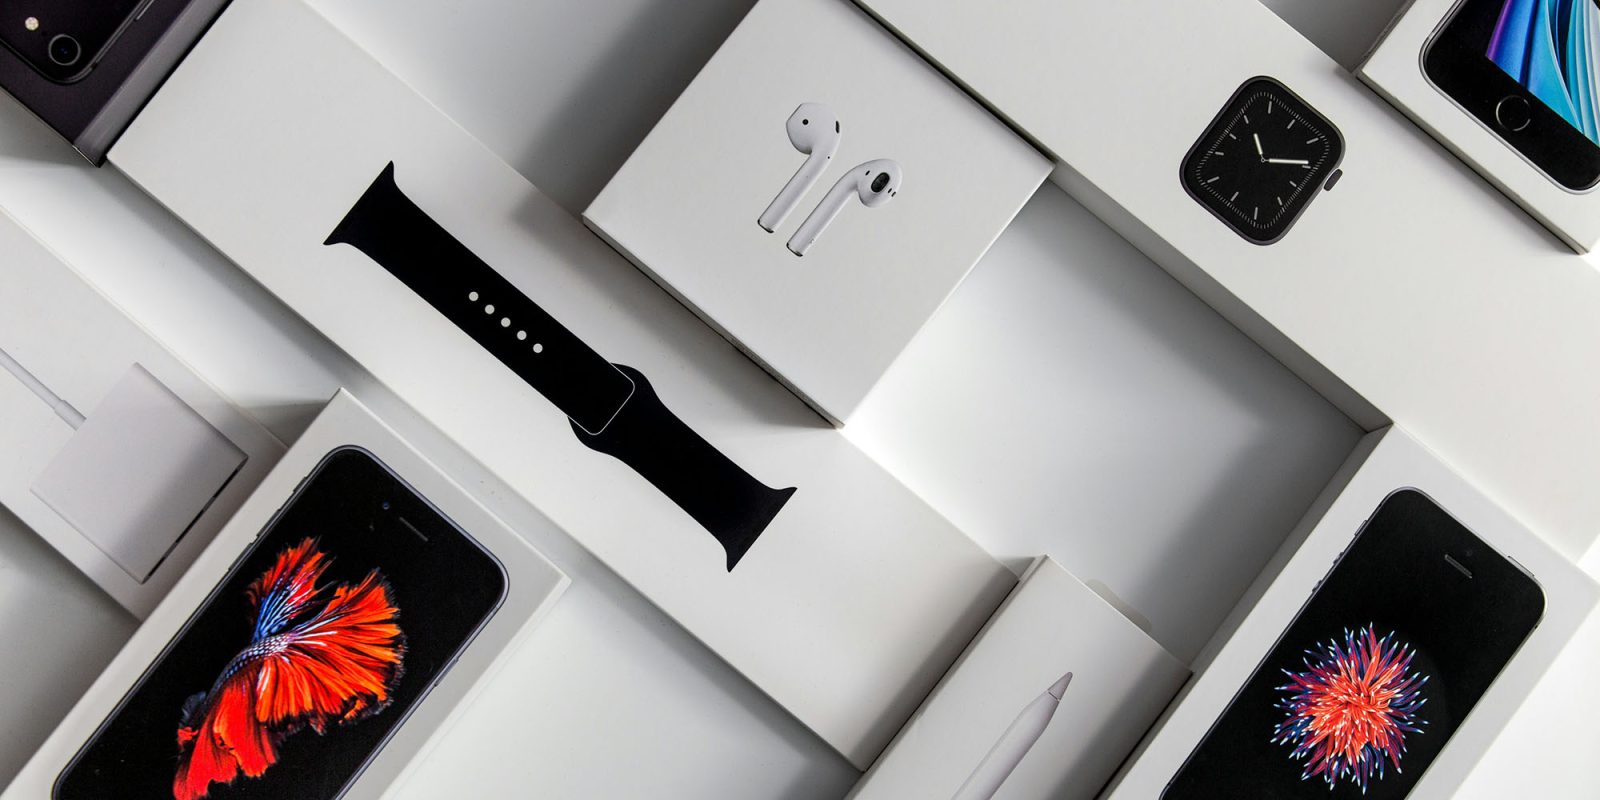 Бывший сотрудник UPS предположительно украл продукцию Apple на сумму 1,3 миллиона долларов (на фото представлены коробочные продукты)